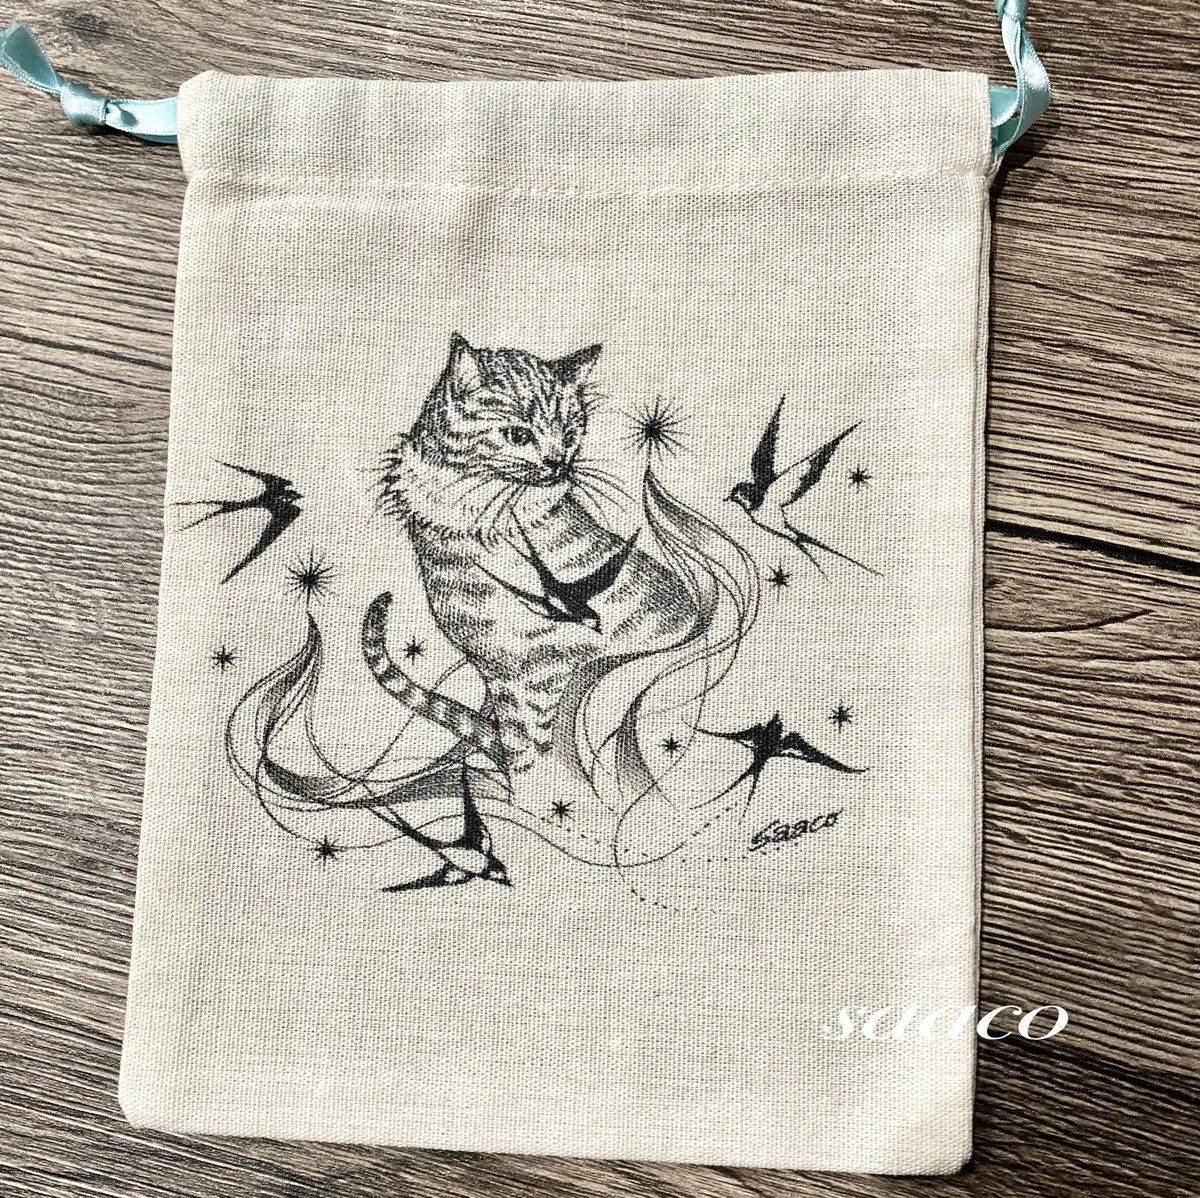 ツバメとネコの巾着袋

#イラスト
#手描きイラスト 